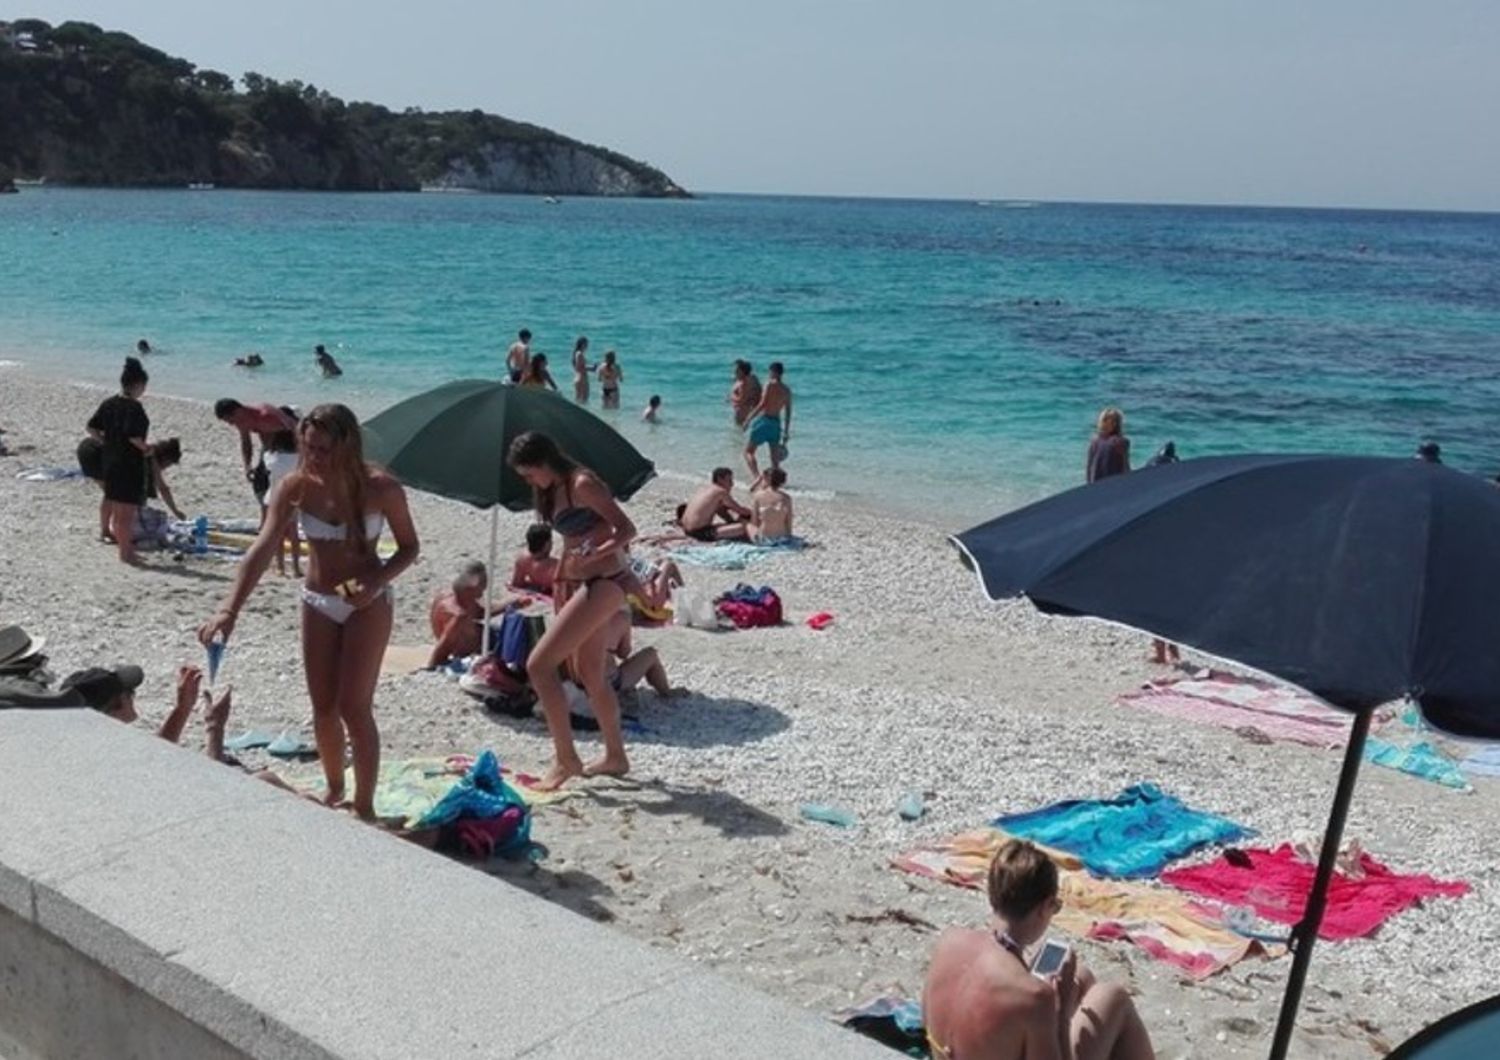 Estate vacanze mare spiaggia - youreporter